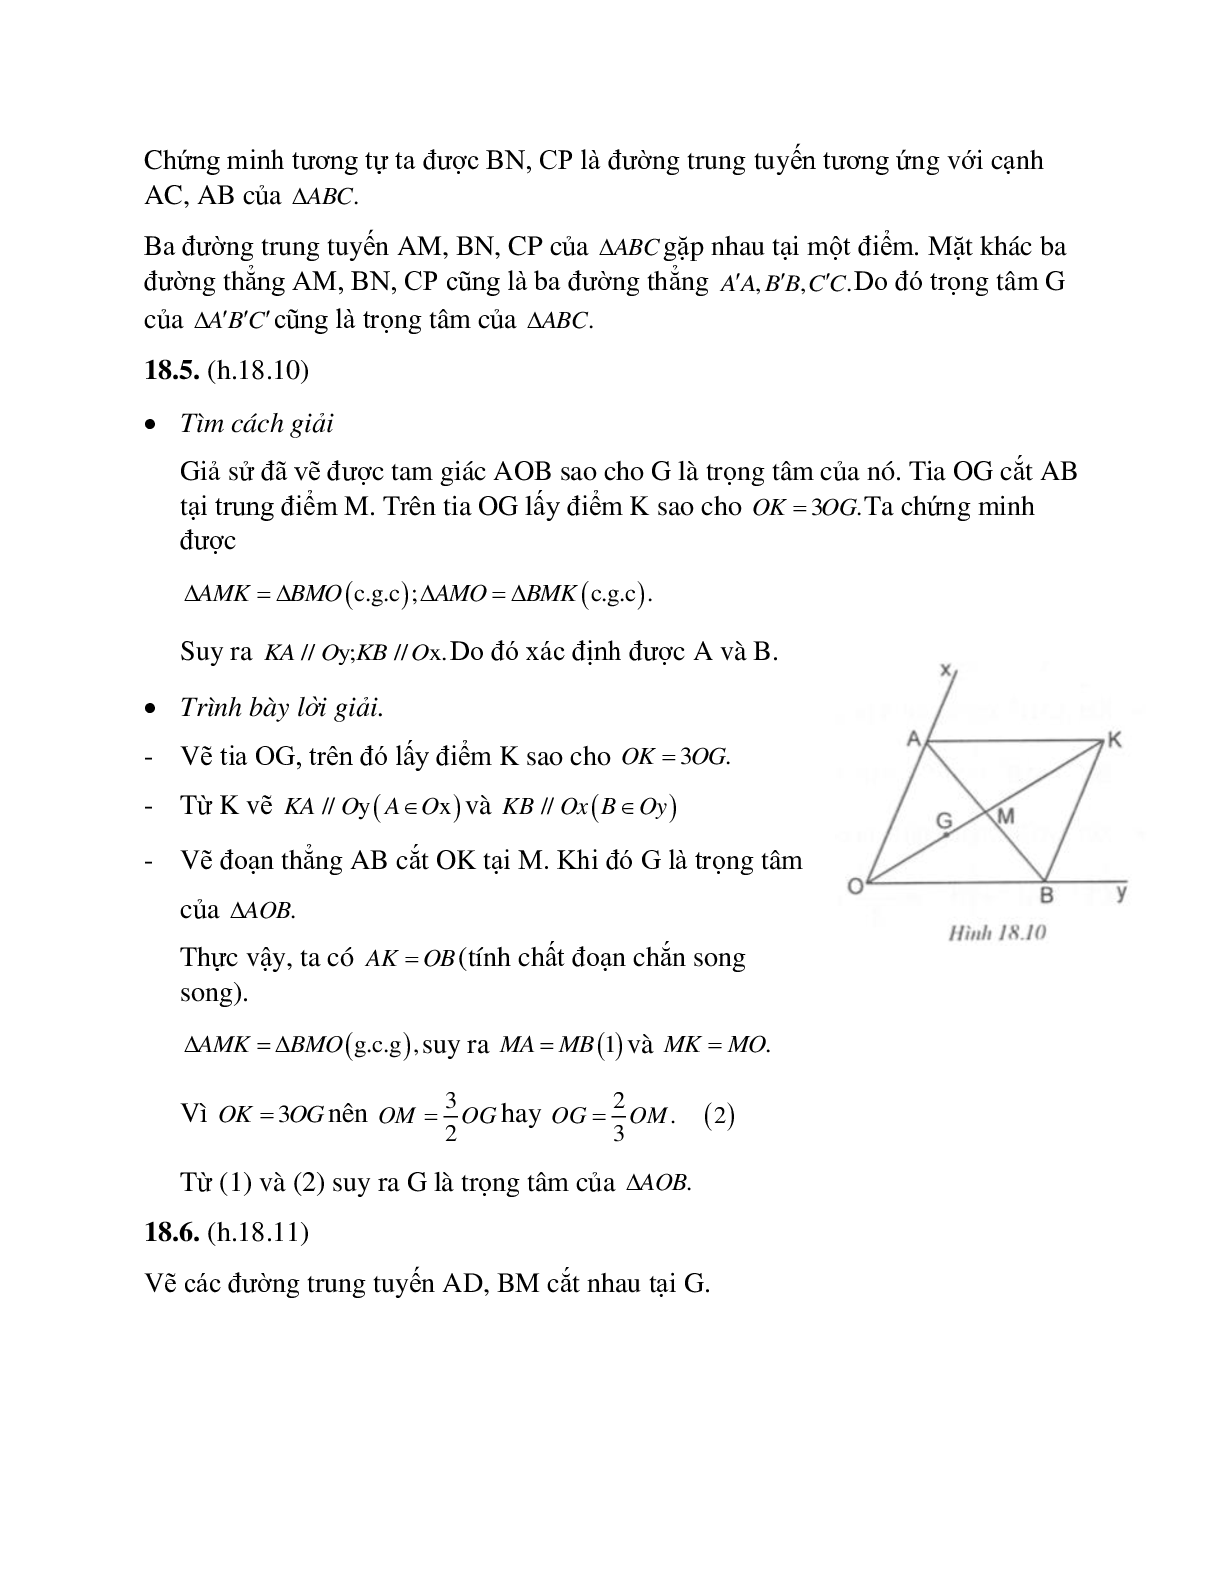 Tuyển tập những bài tập hay nhất về Tính chất ba đường trung tuyến của tam giác có lời giải (trang 8)